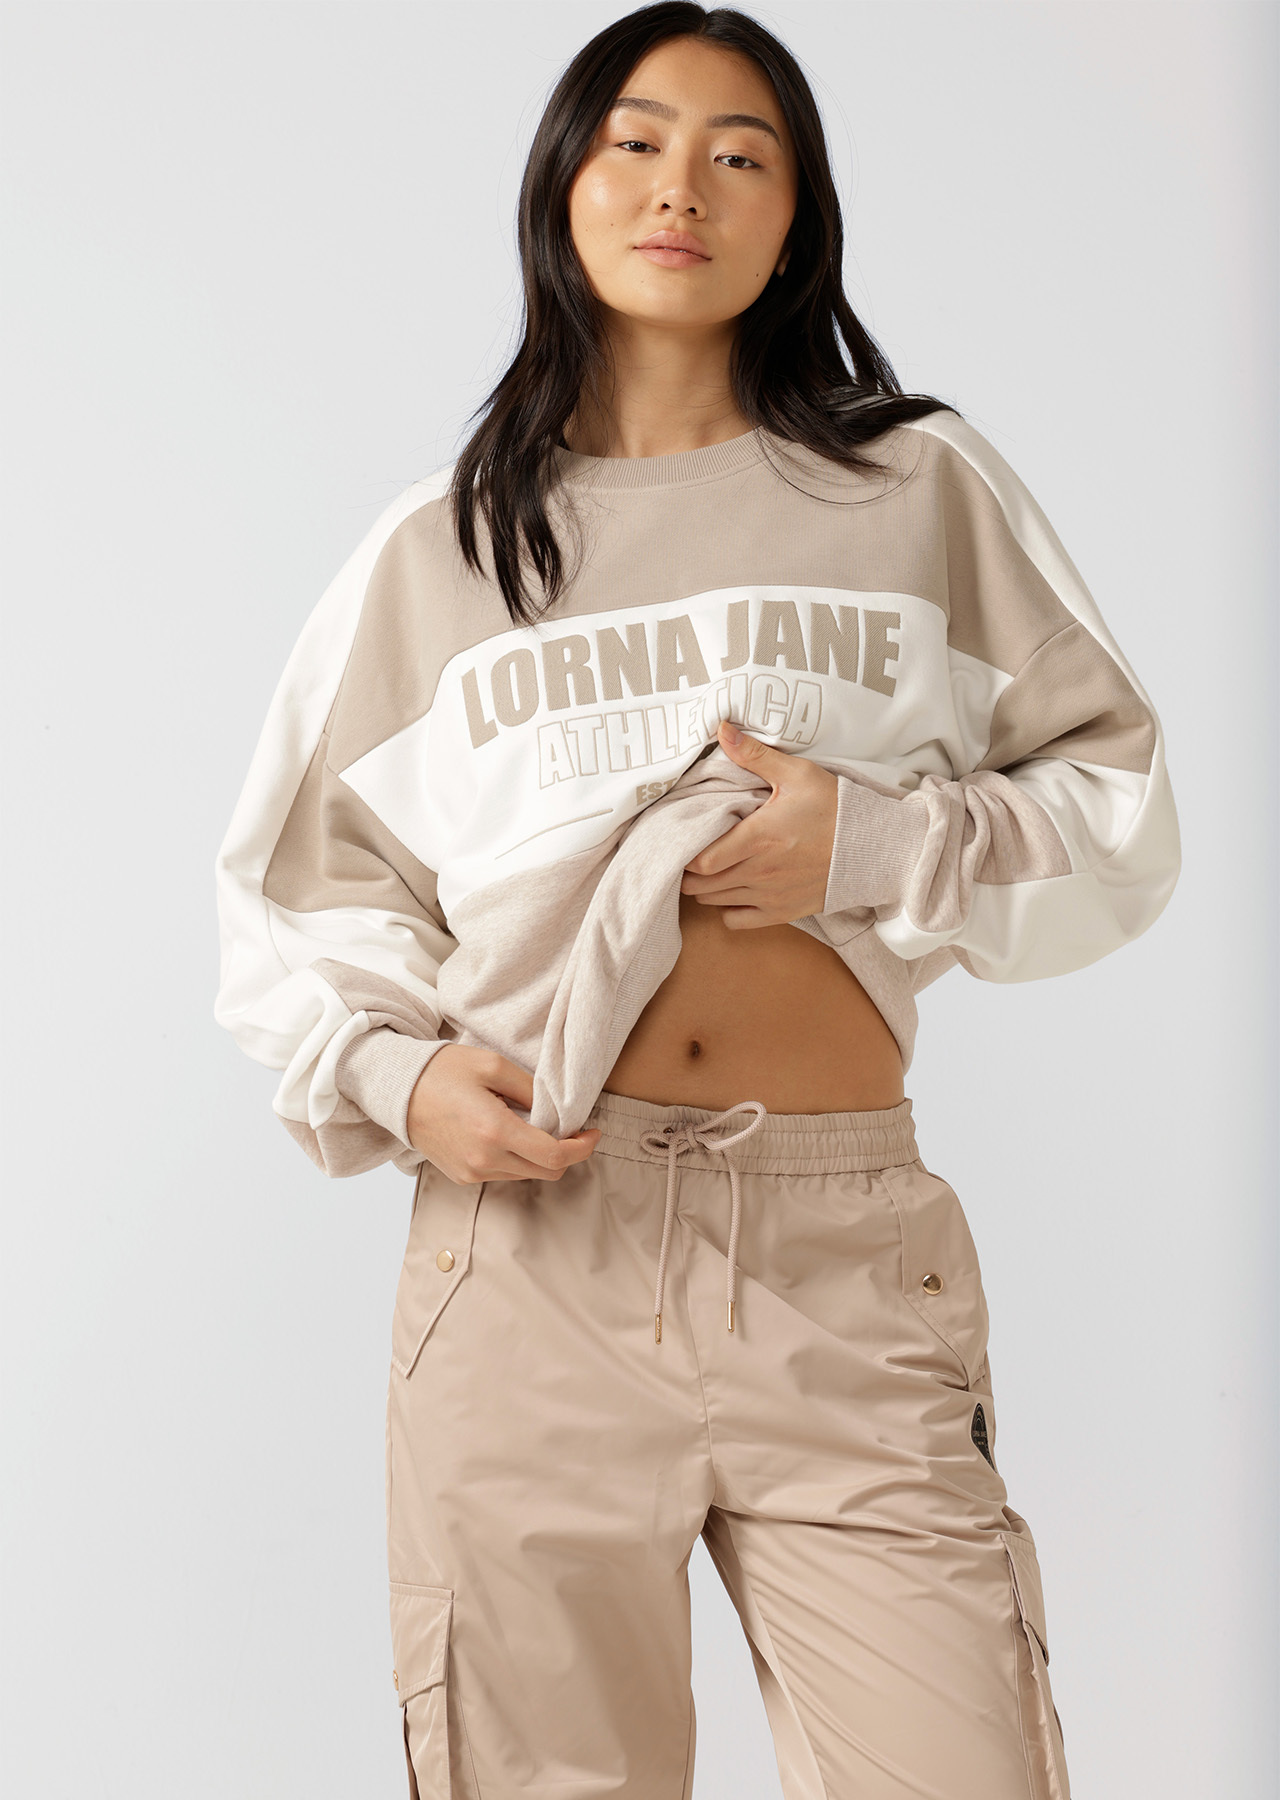 Lorna Jane Womens Tiebreaker Oversized Sweater Neutral XS